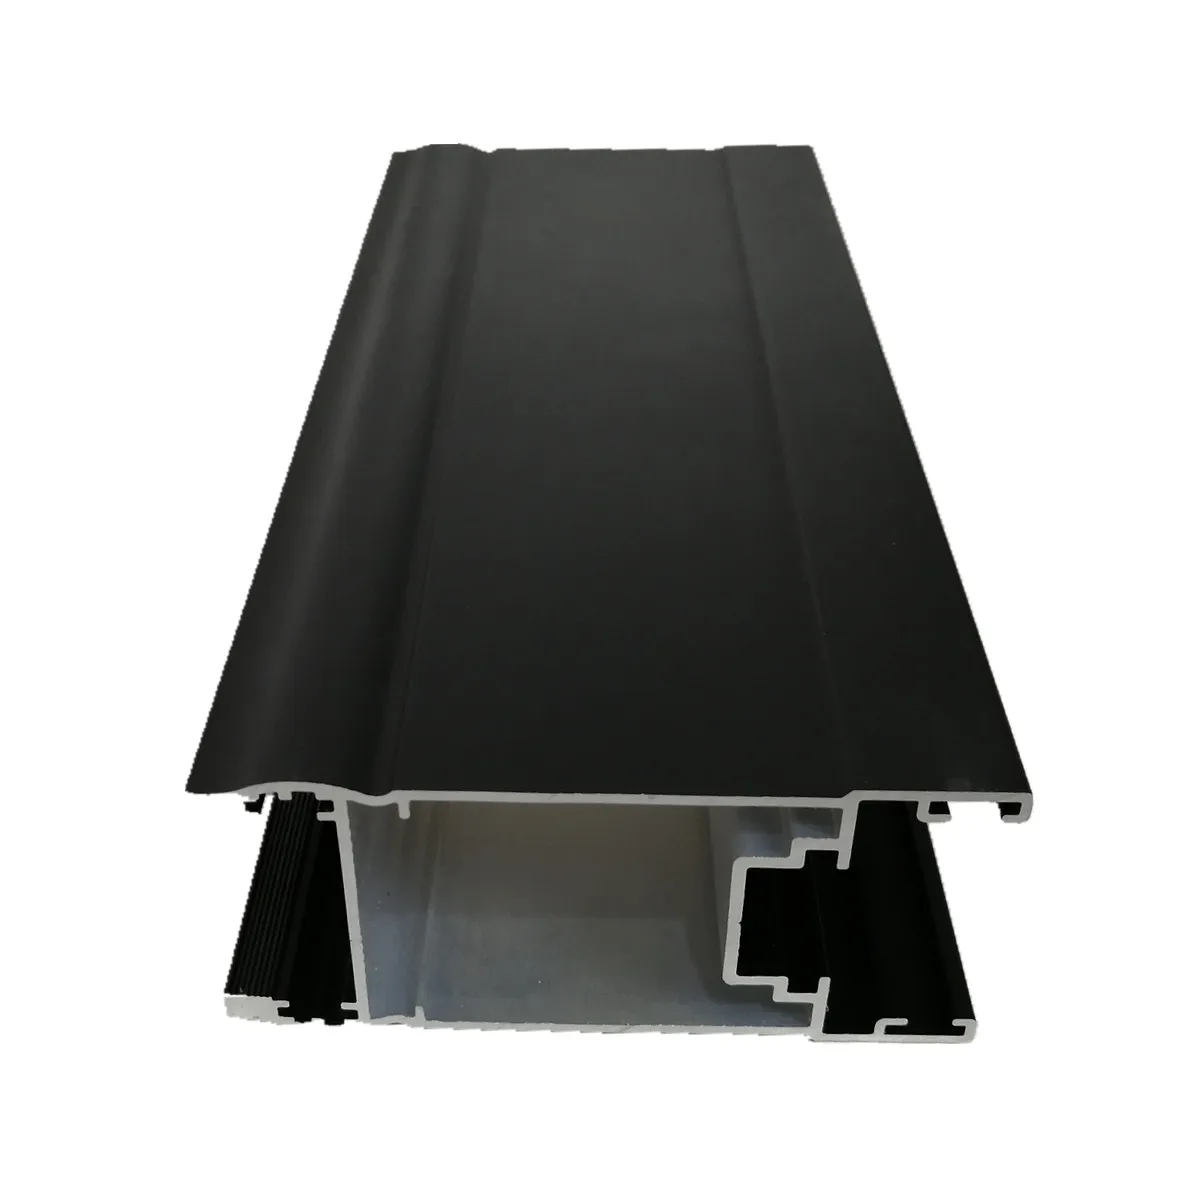 buy 6063 铝挤压,砂黑色阳极氧化铝合金型材,铝滑动玻璃门简介